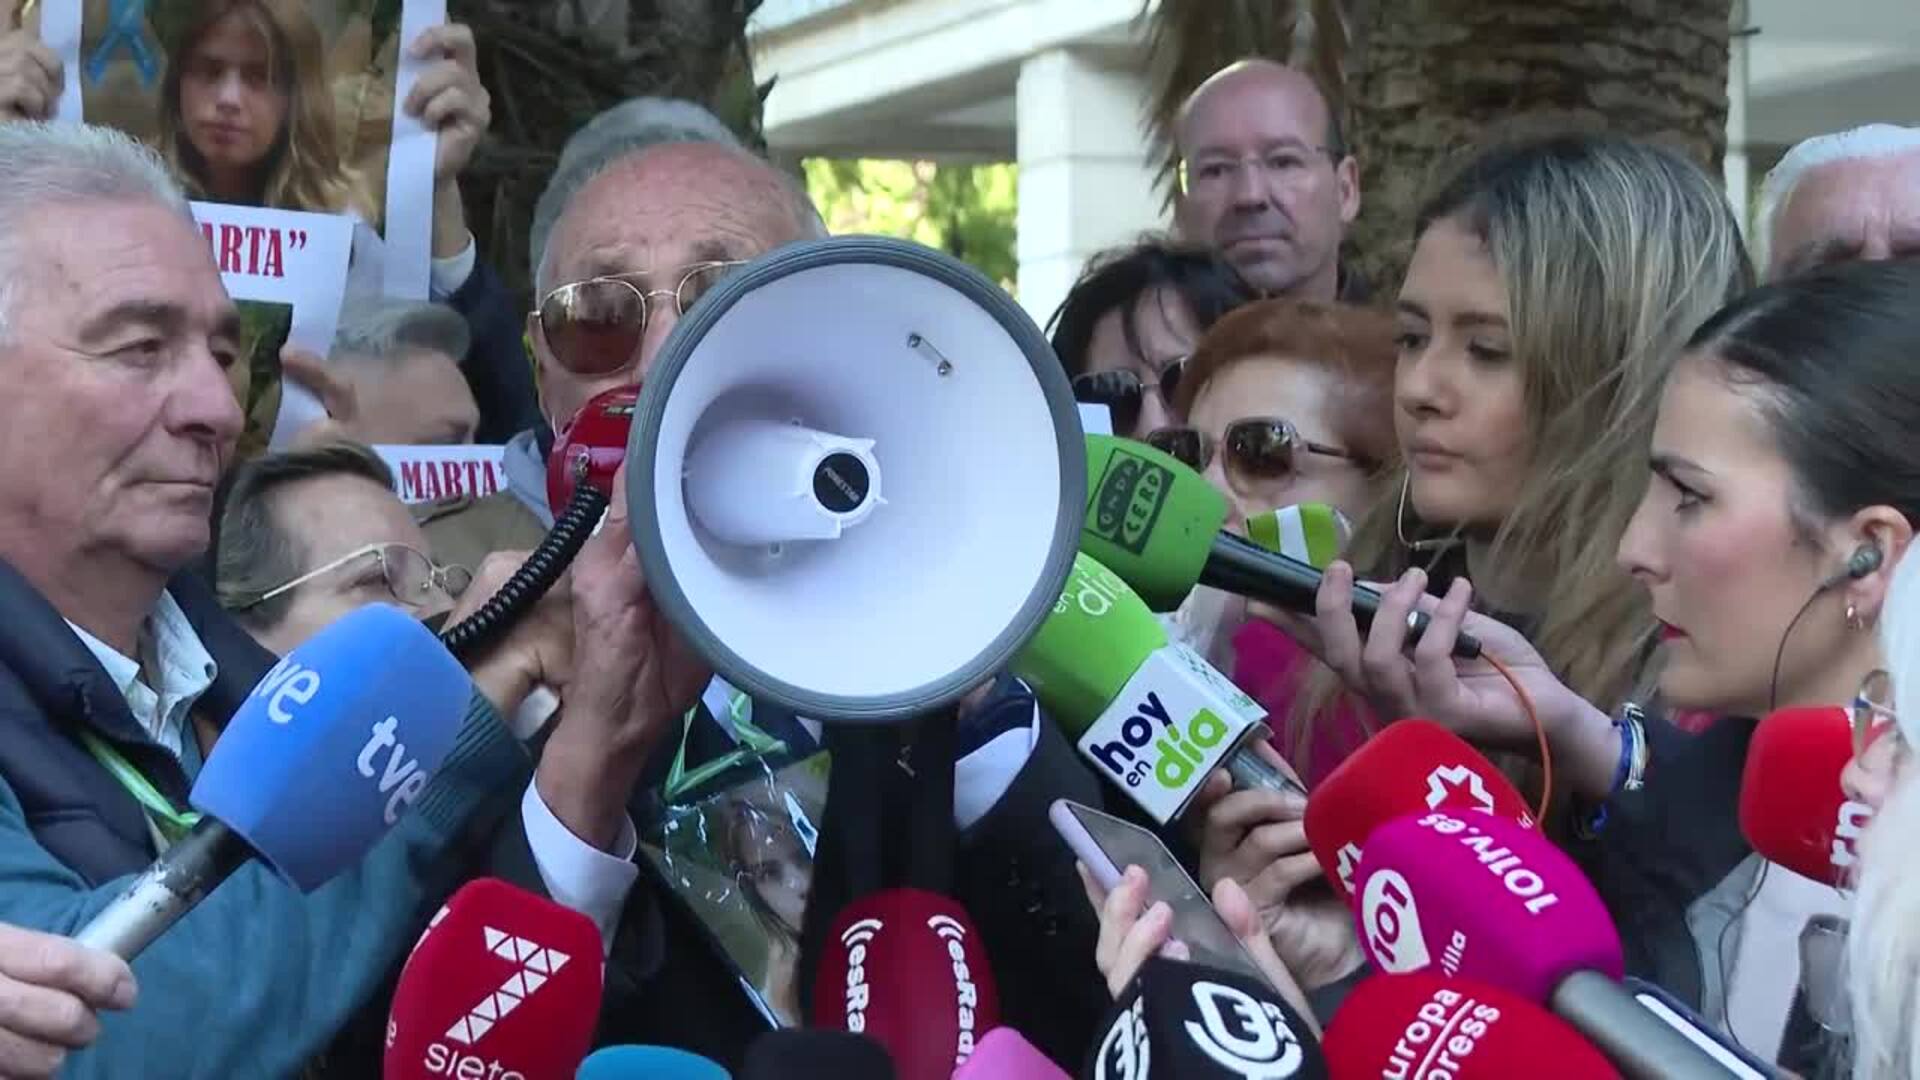 Sevilla conmemora 15 años del crimen de Marta reclamando "repetir el juicio" y clonar móviles